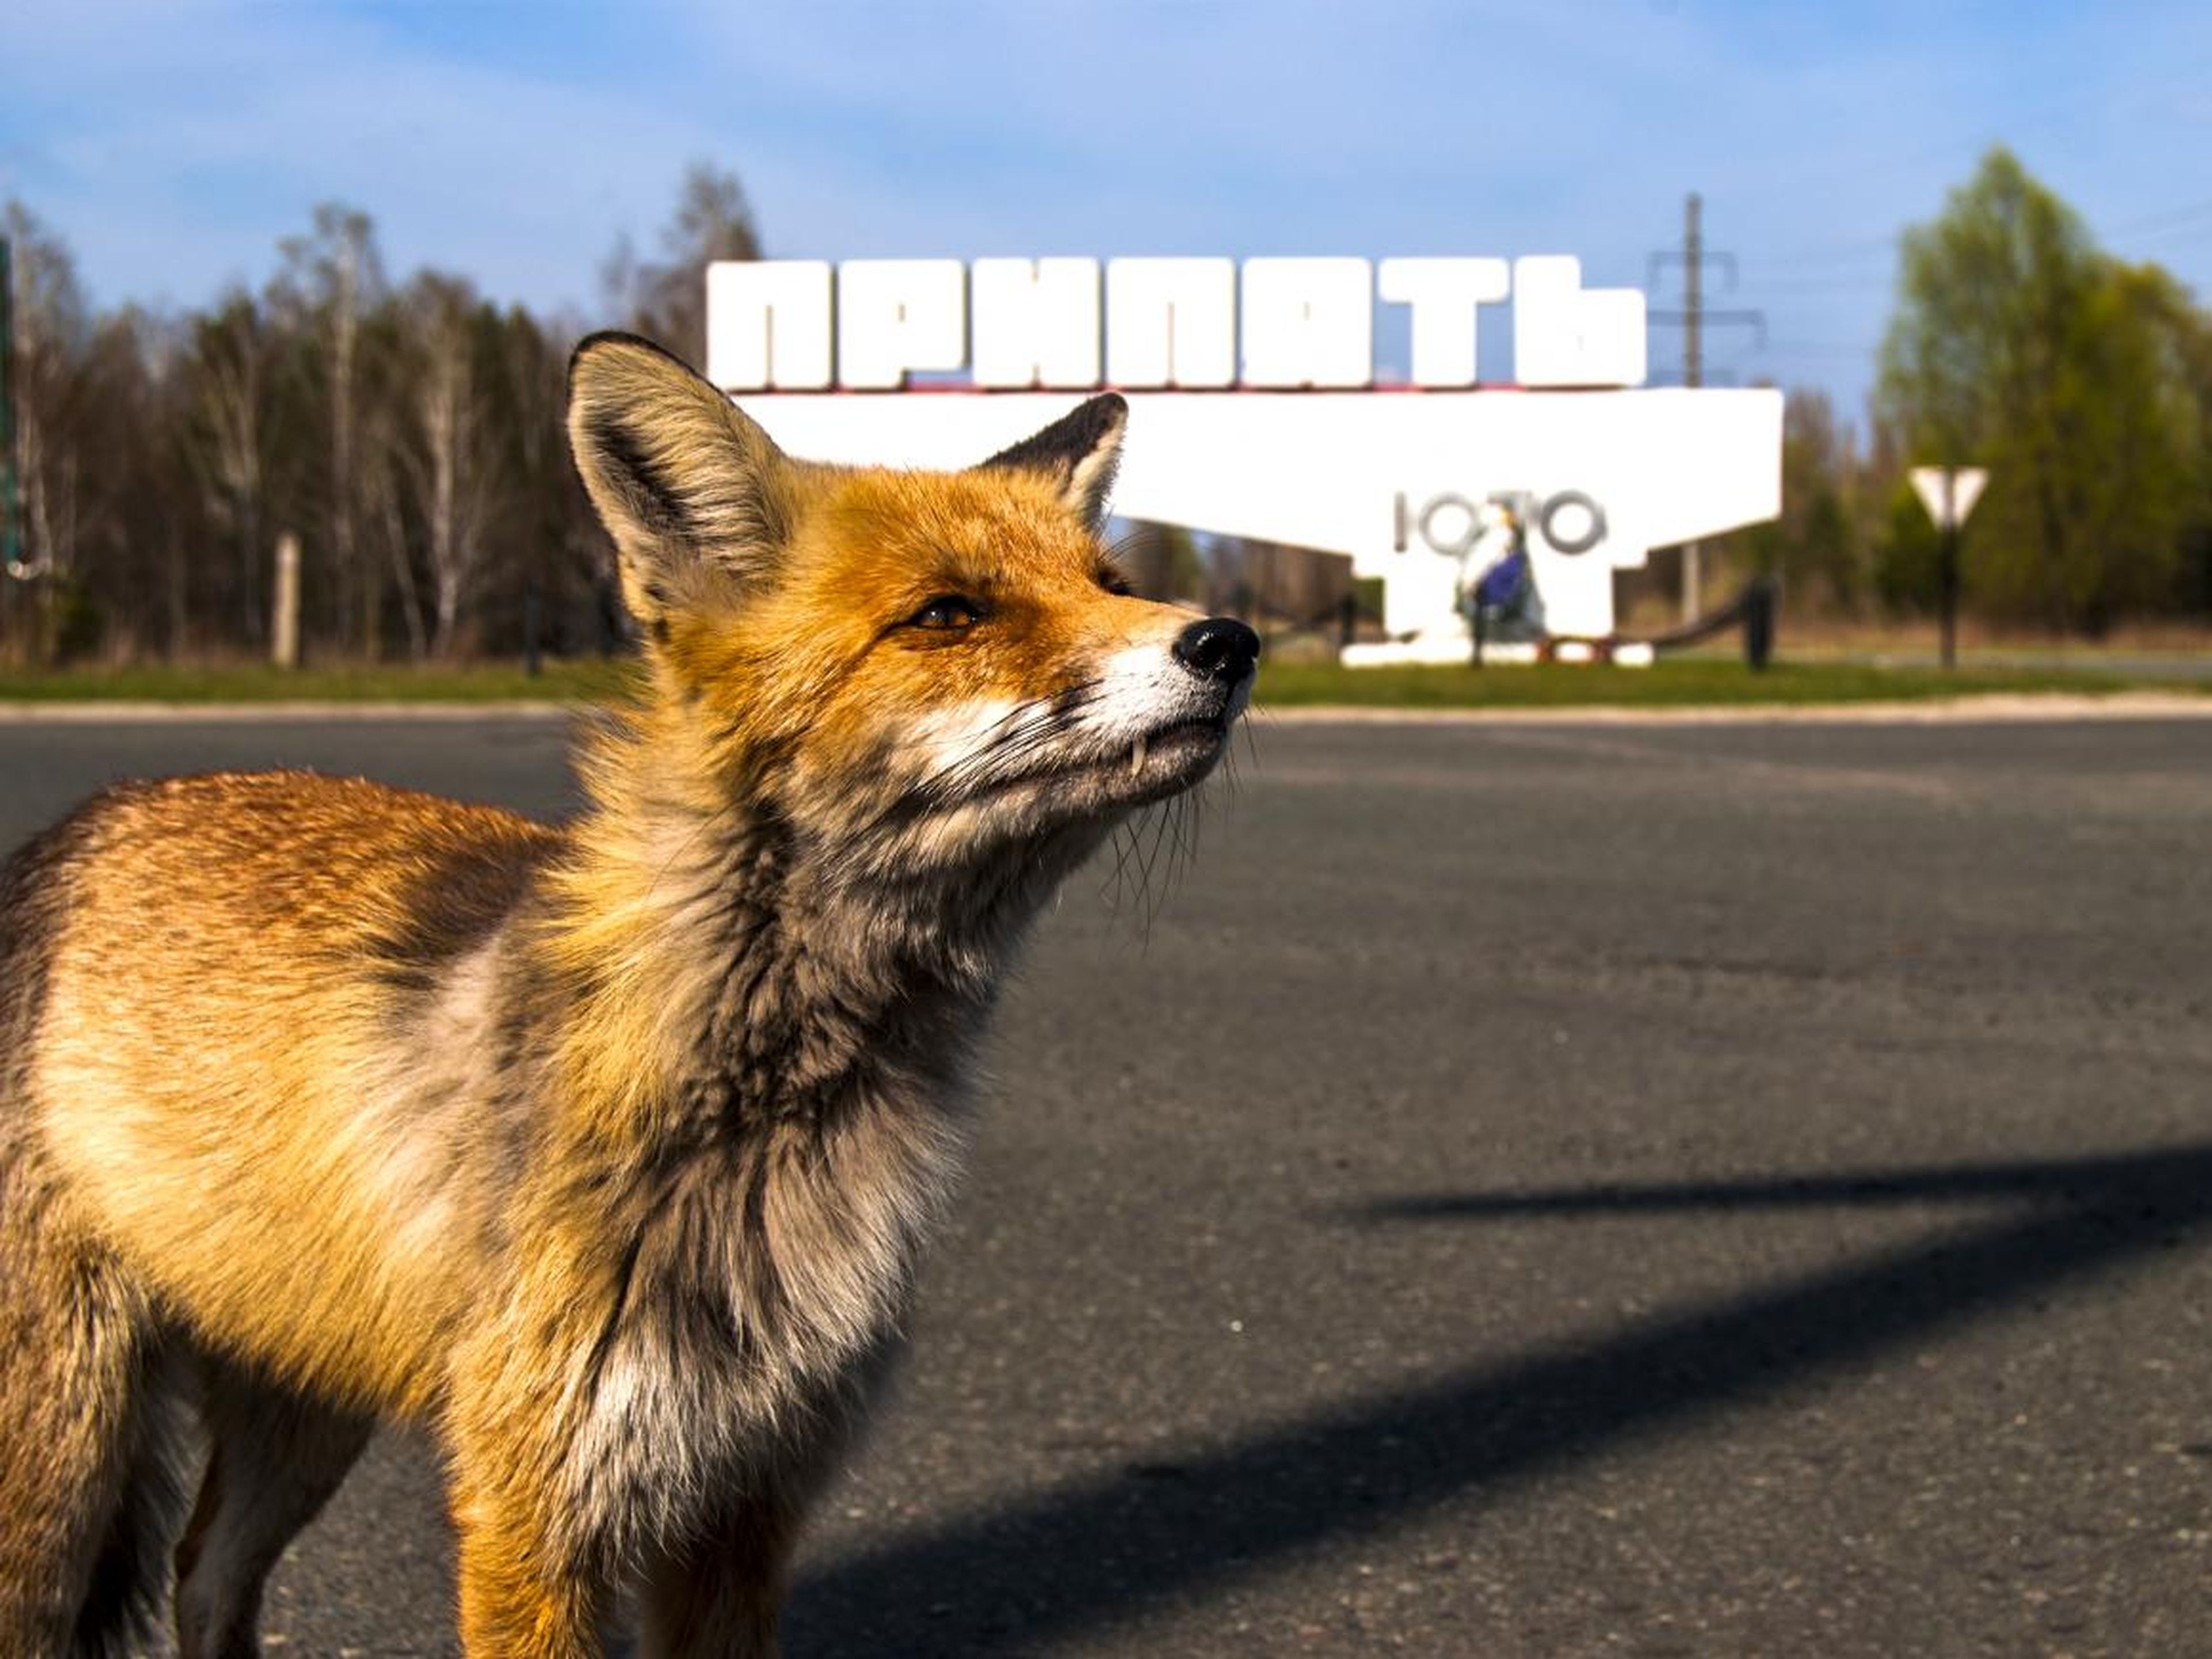 Un zorro salvaje delante del cartel que indica "Pripyat" en ruso.